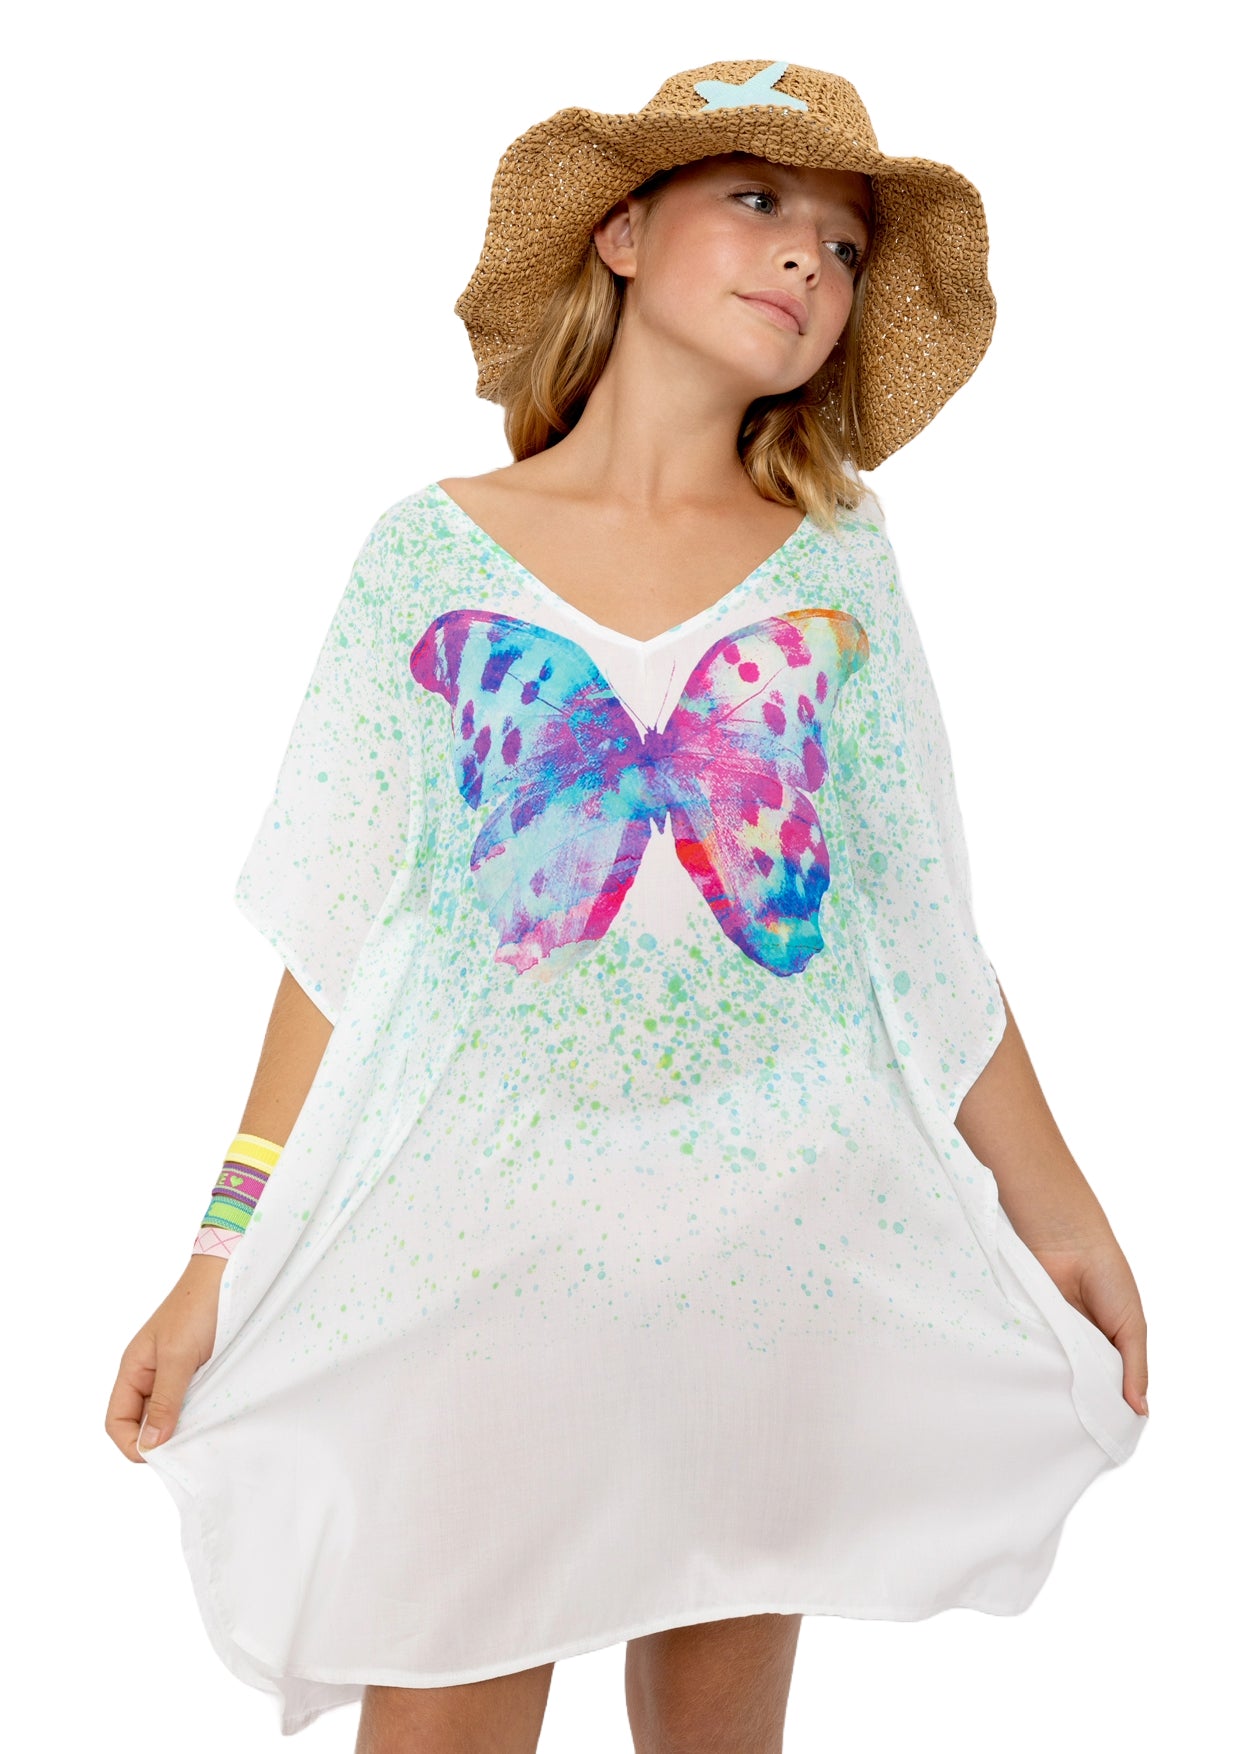 butterfly beachwear for girls, cover-ups for girls